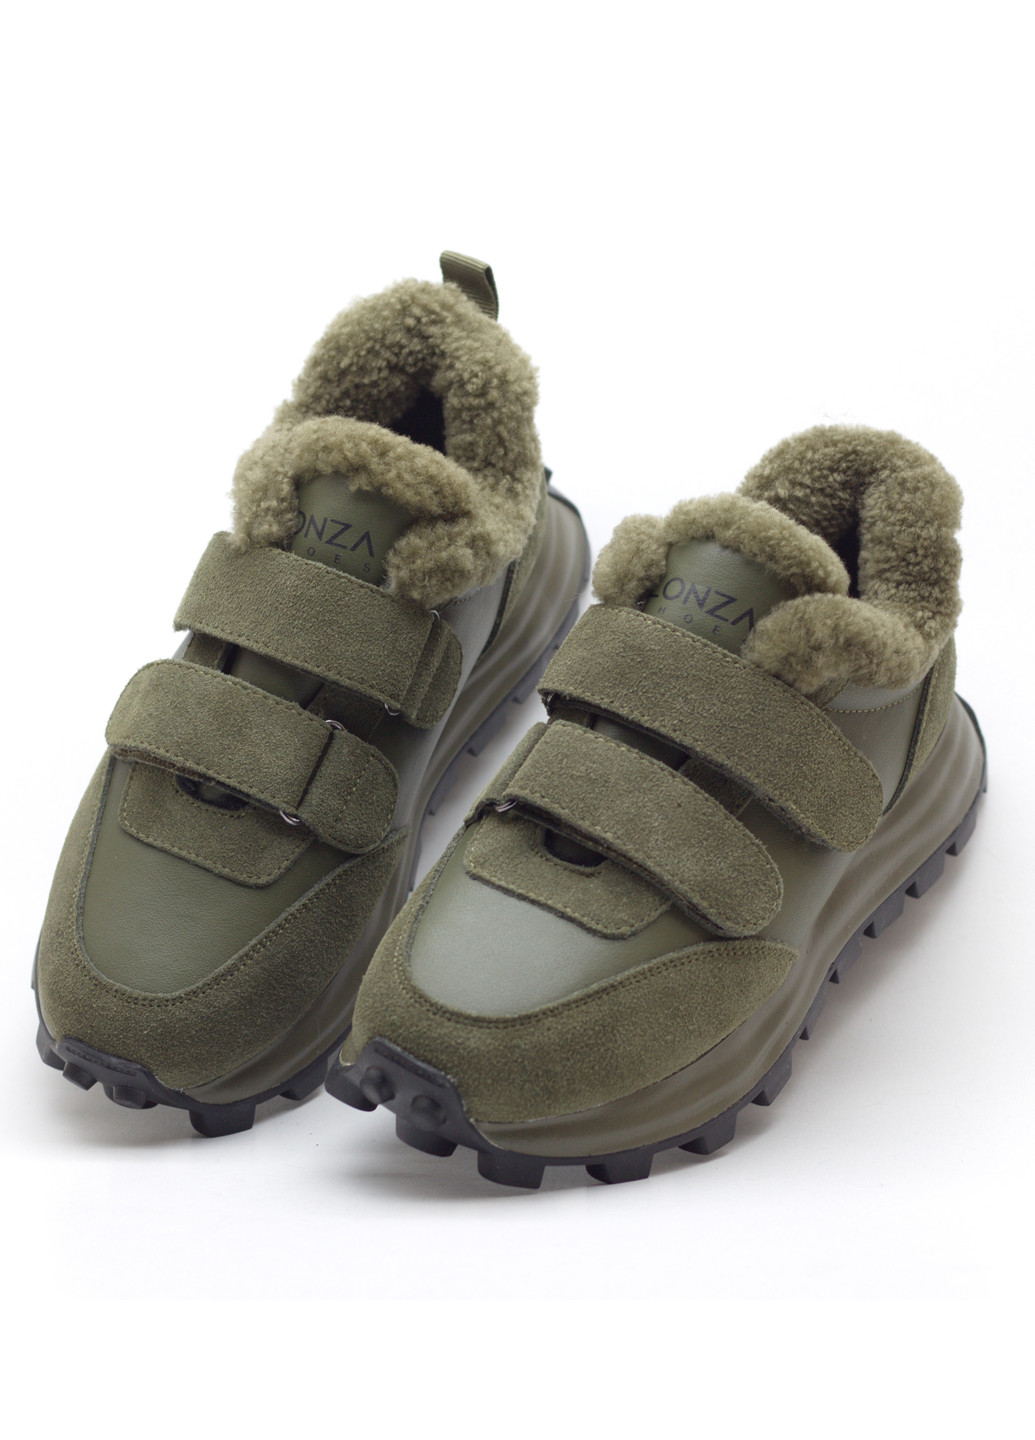 Хакі зимовий кросівки жіночі зимові Lonza ZM1207